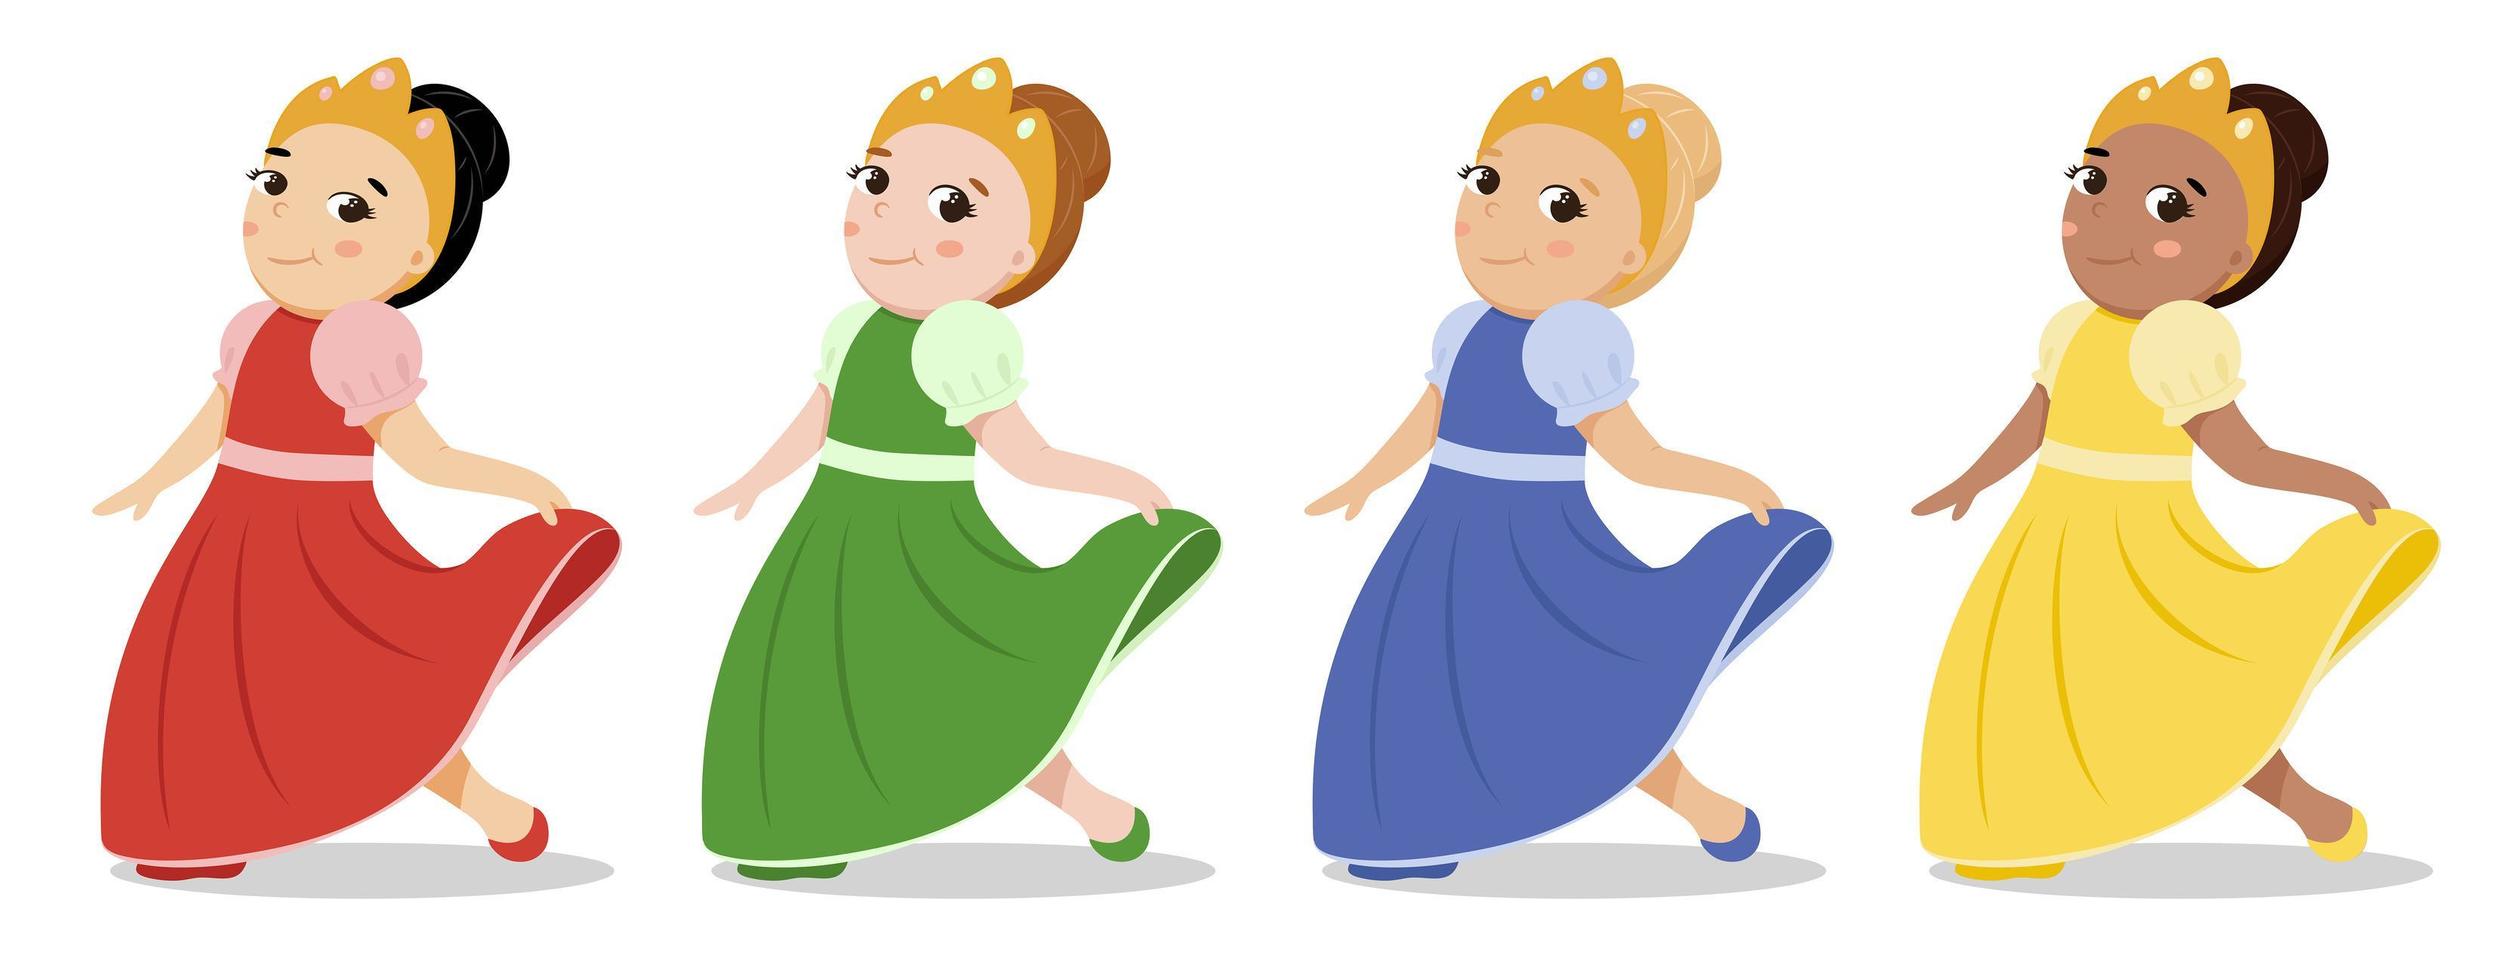 ilustración de una linda princesita con un vestido brillante y una corona en la cabeza vector